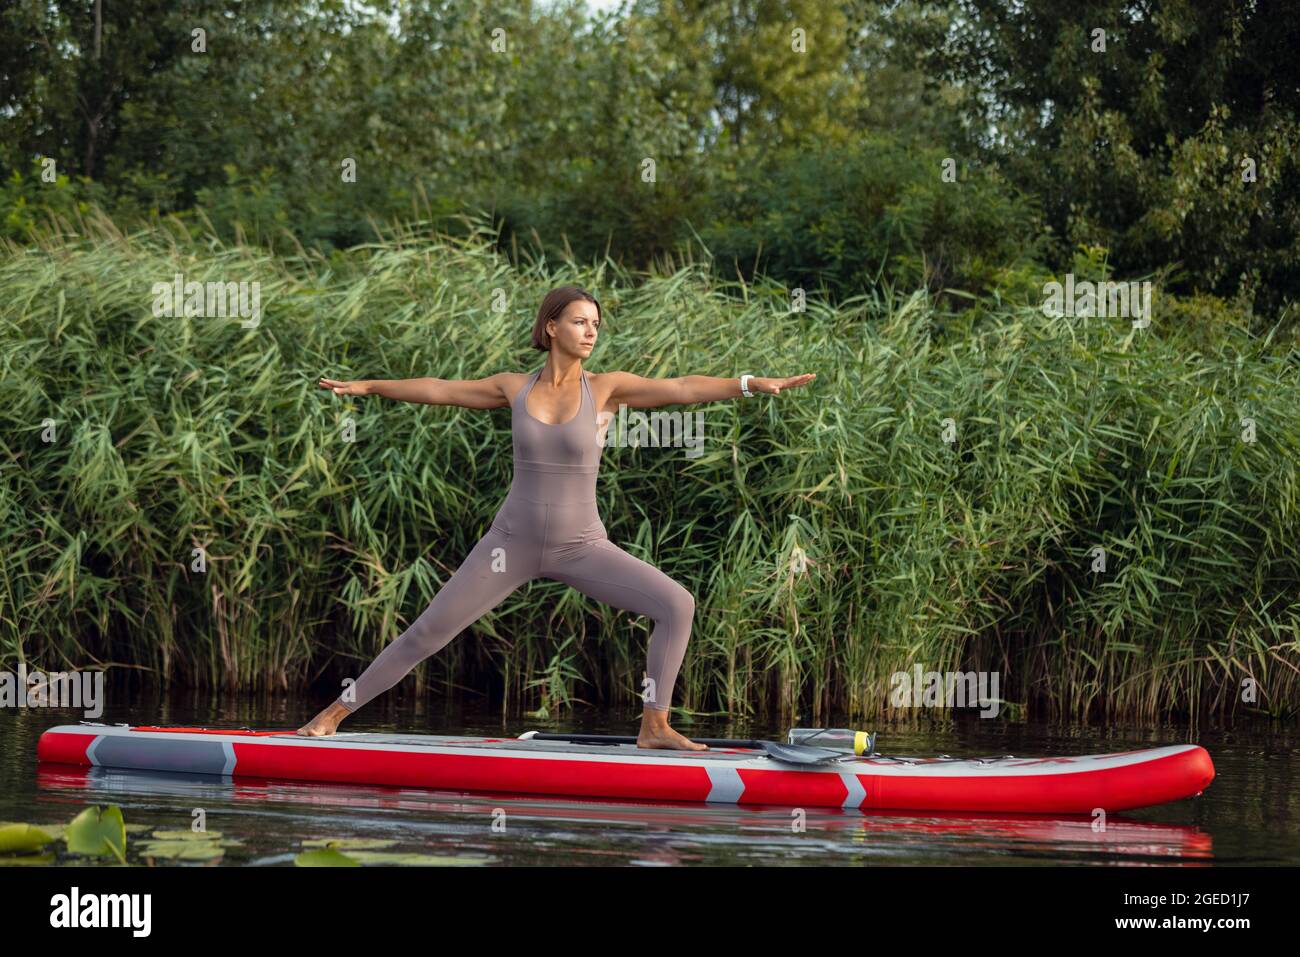 Una joven caucásica hermosa chica delgada haciendo yoga, pilates en tabla de paddle, SUP solo en la mañana de verano. Concepto de vida activa, deporte, actividad de ocio Foto de stock